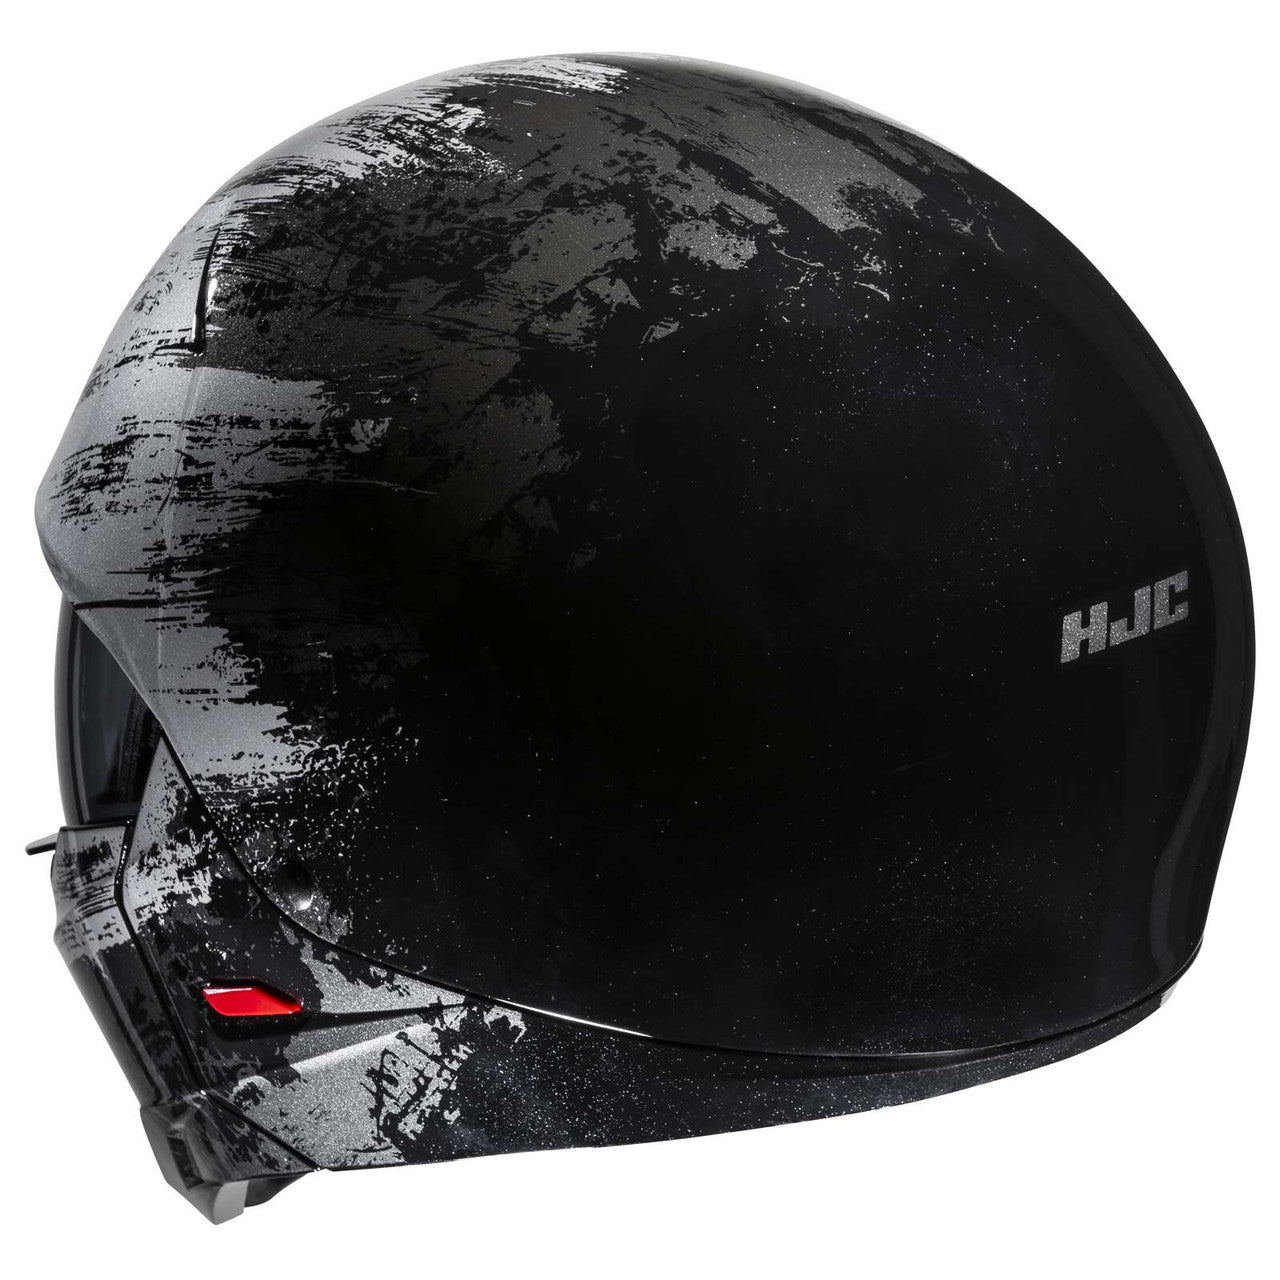 HJC-i20-Furia-Open-Face-Motorcycle-Helmet-Black-Grey-rear-view